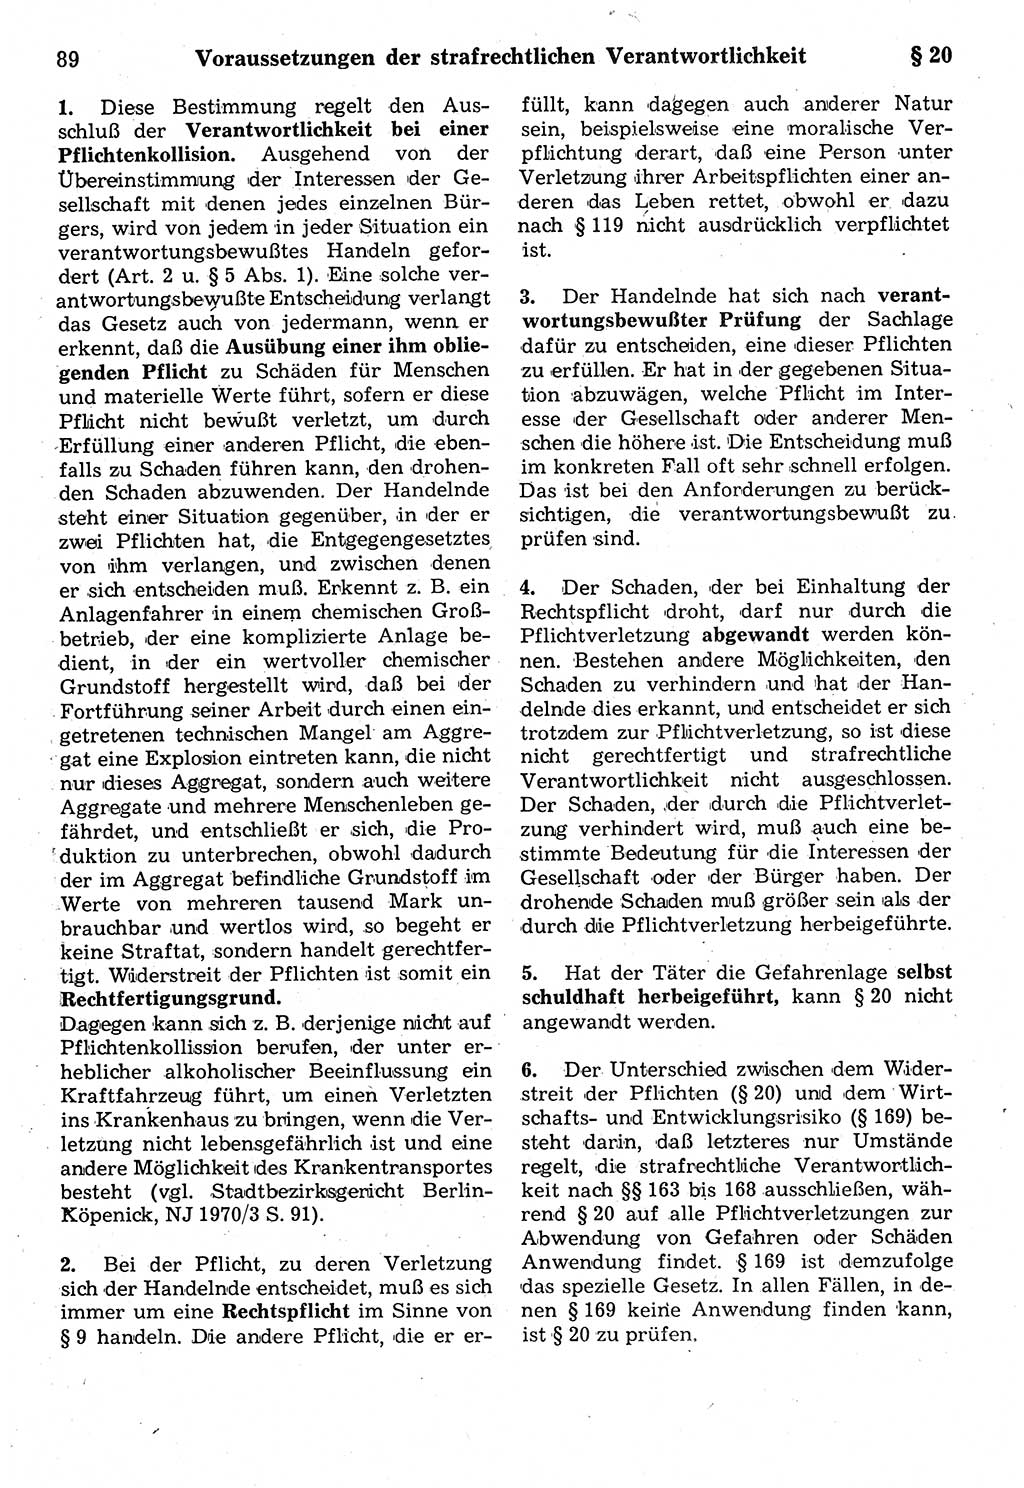 Strafrecht der Deutschen Demokratischen Republik (DDR), Kommentar zum Strafgesetzbuch (StGB) 1987, Seite 89 (Strafr. DDR Komm. StGB 1987, S. 89)